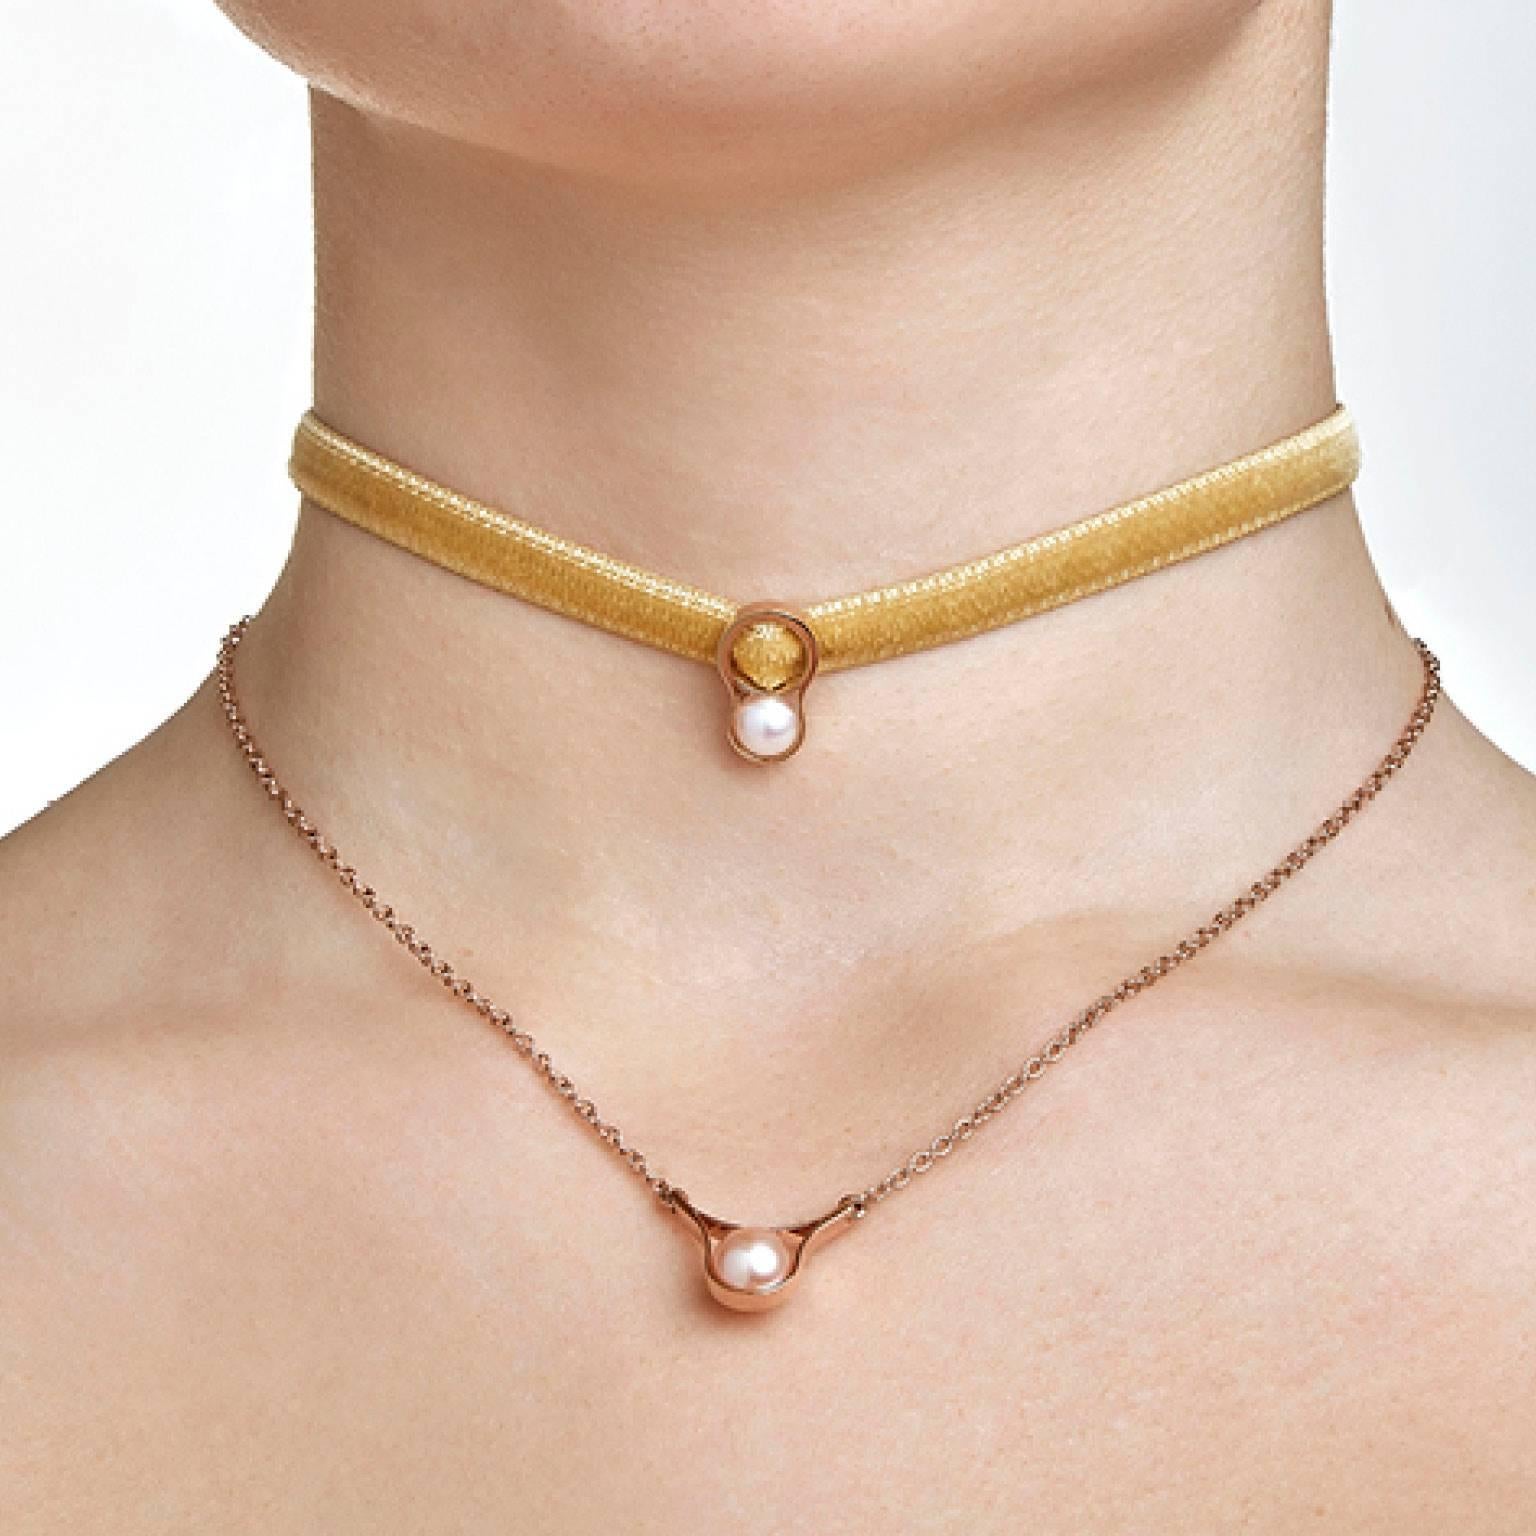 velvet choker necklace gold